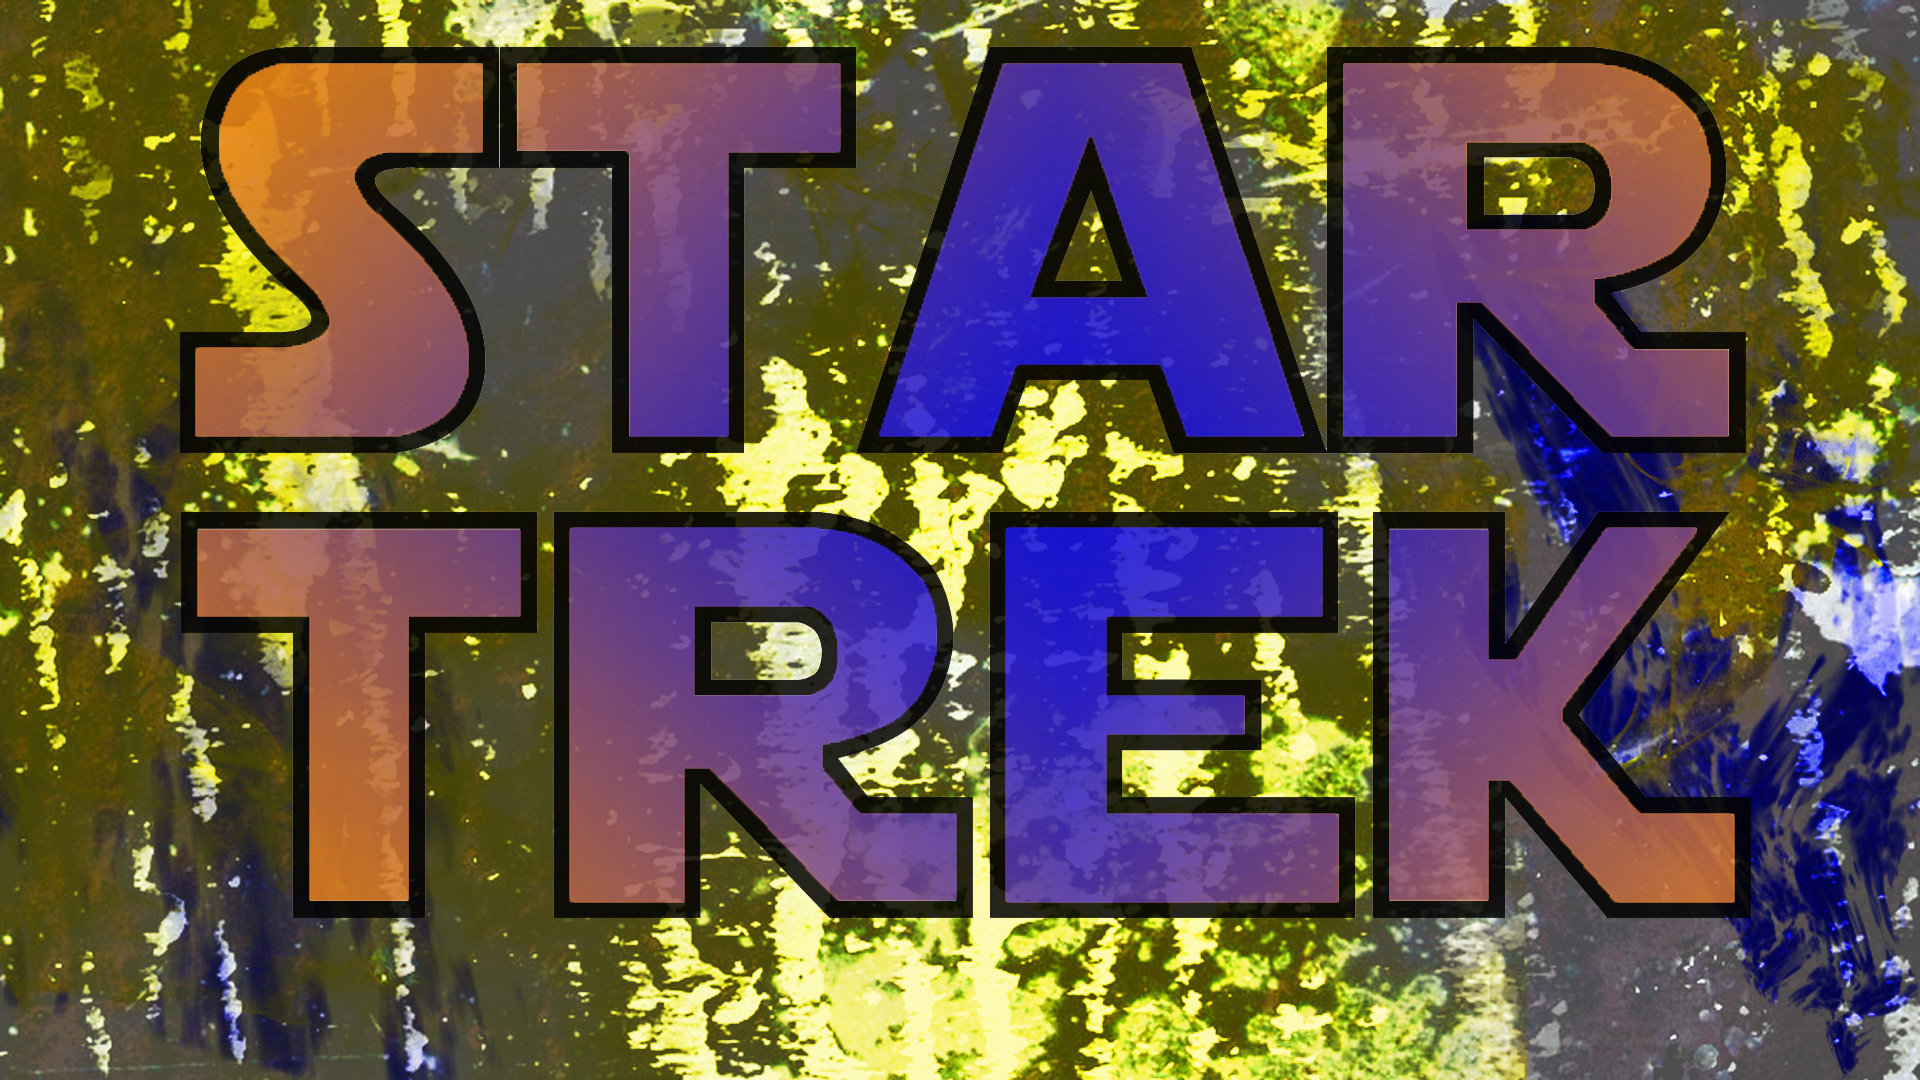 Free download Star Trek: The Original Series wallpaper ID:198091 full hd 1080p for PC